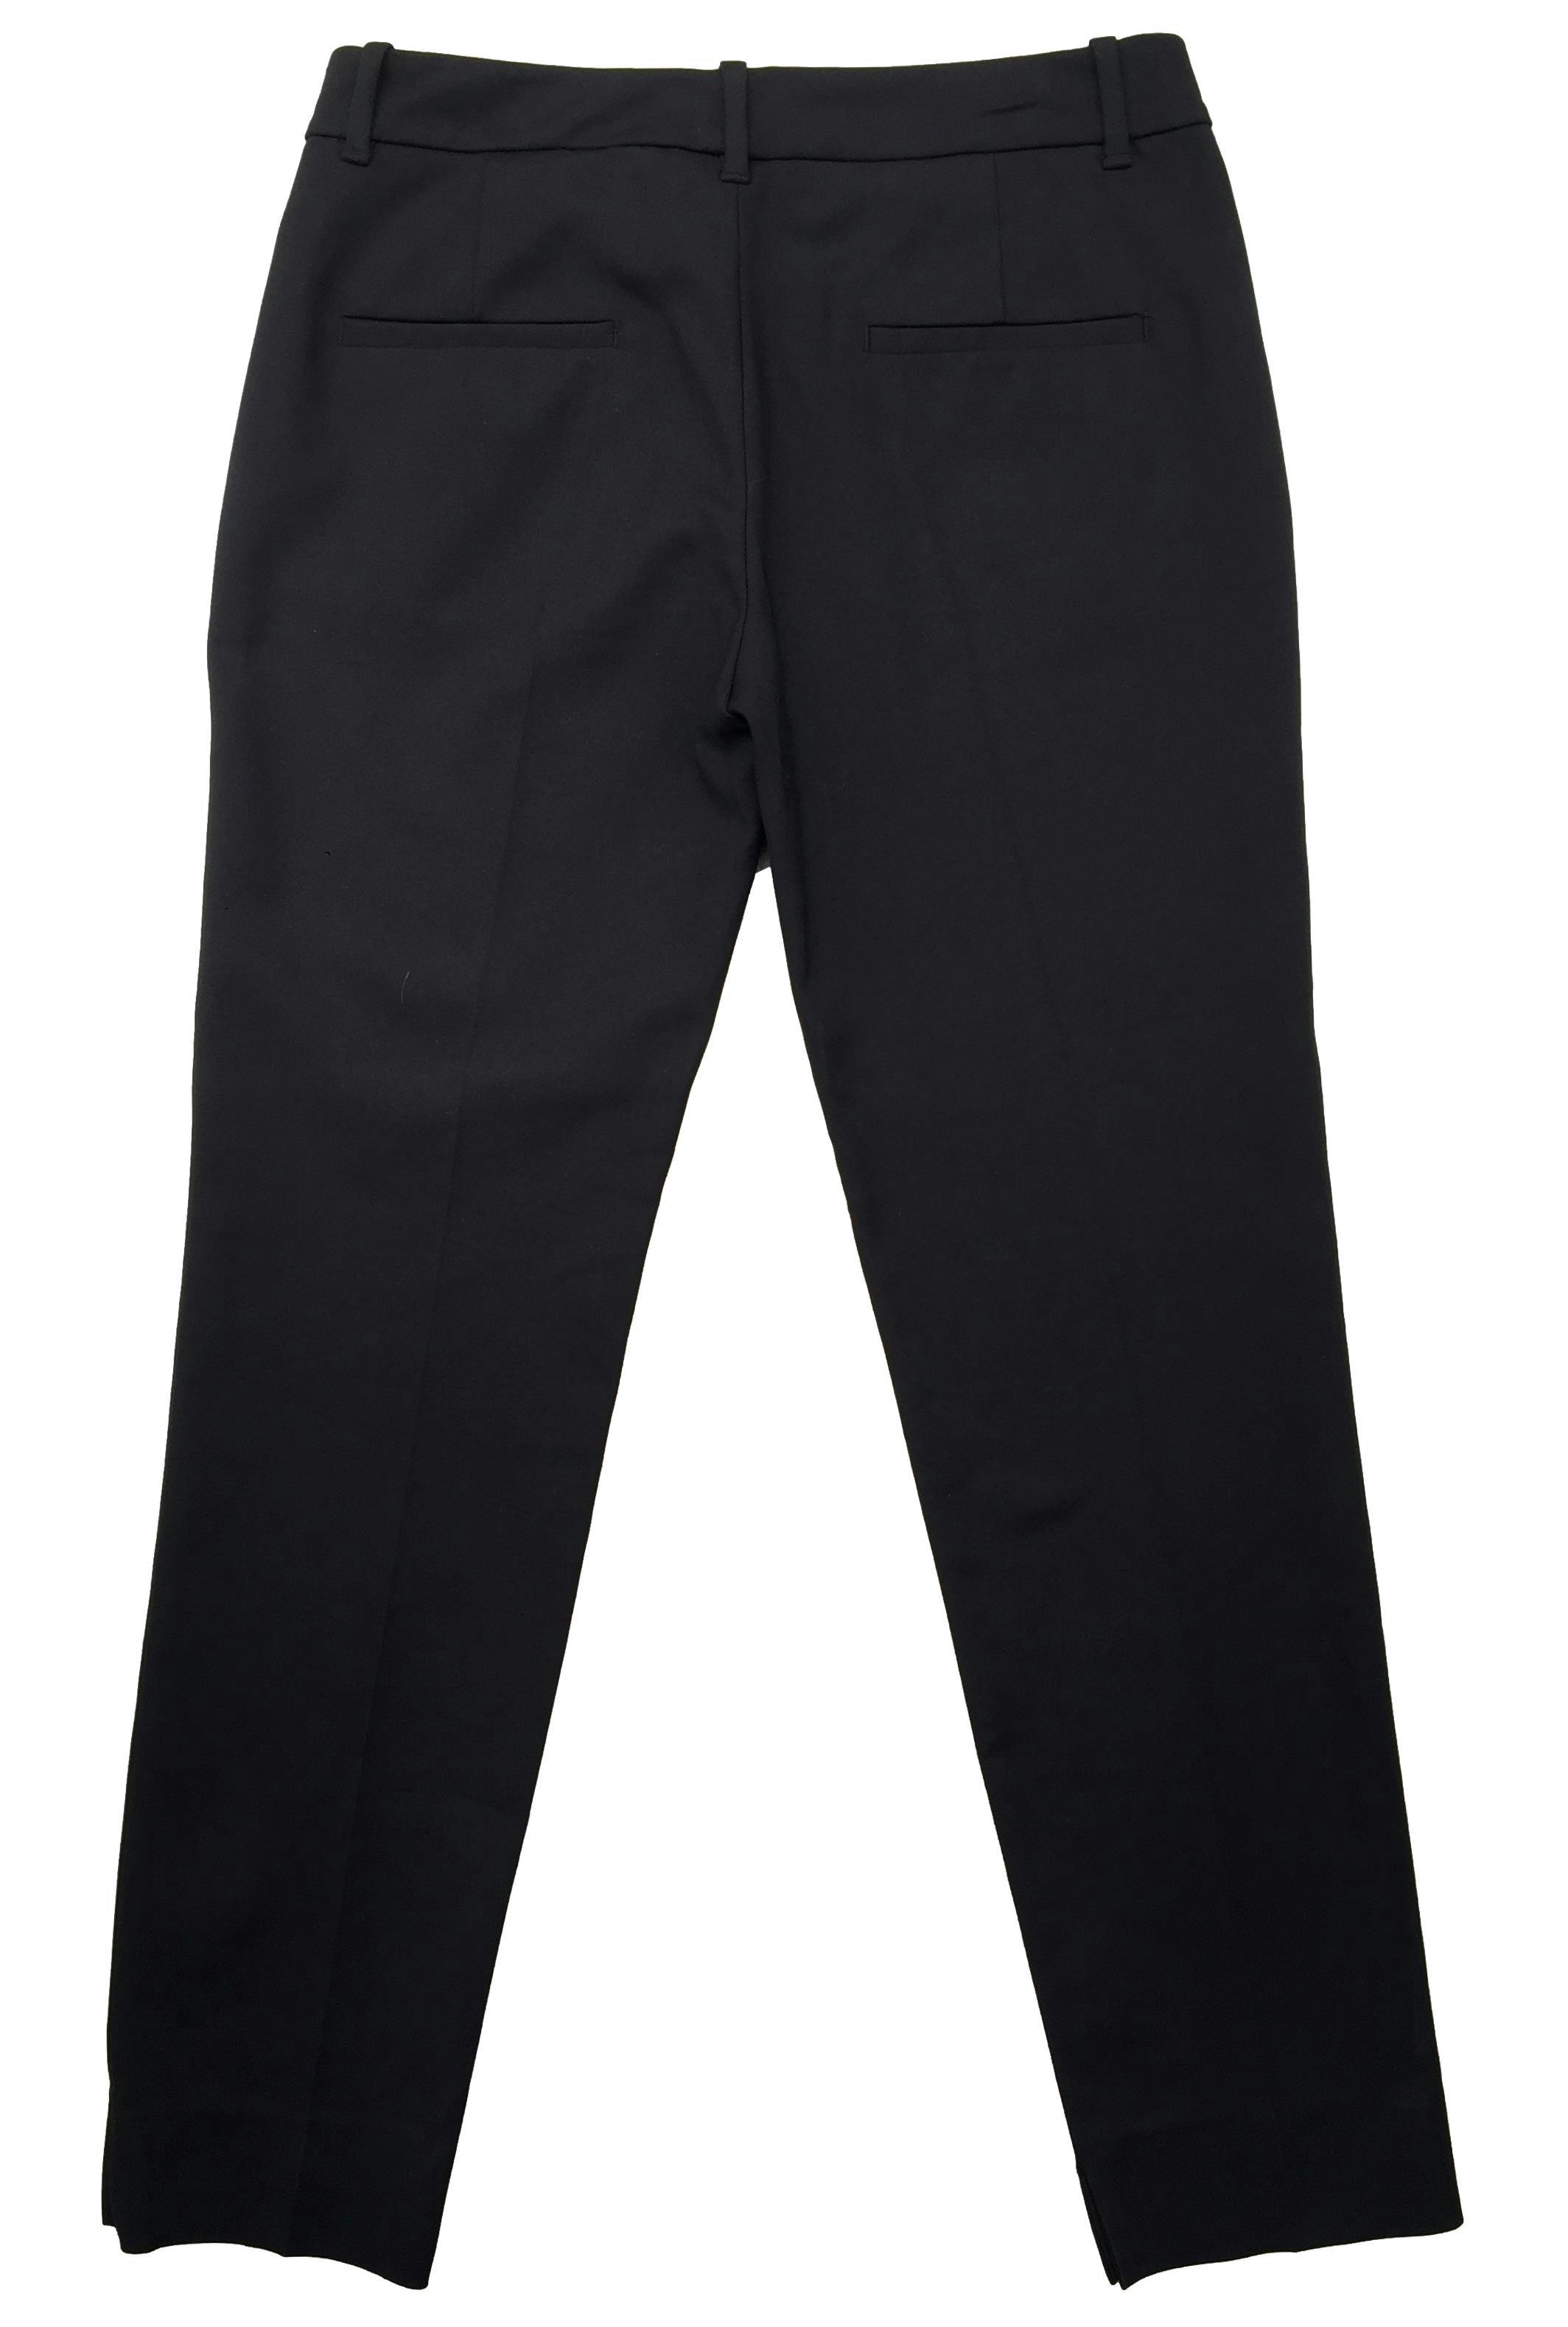 Pantalón formal Zara negro slim fit con bolsillos laterales. Cintura 75cm Tiro 24cm Largo 95cm